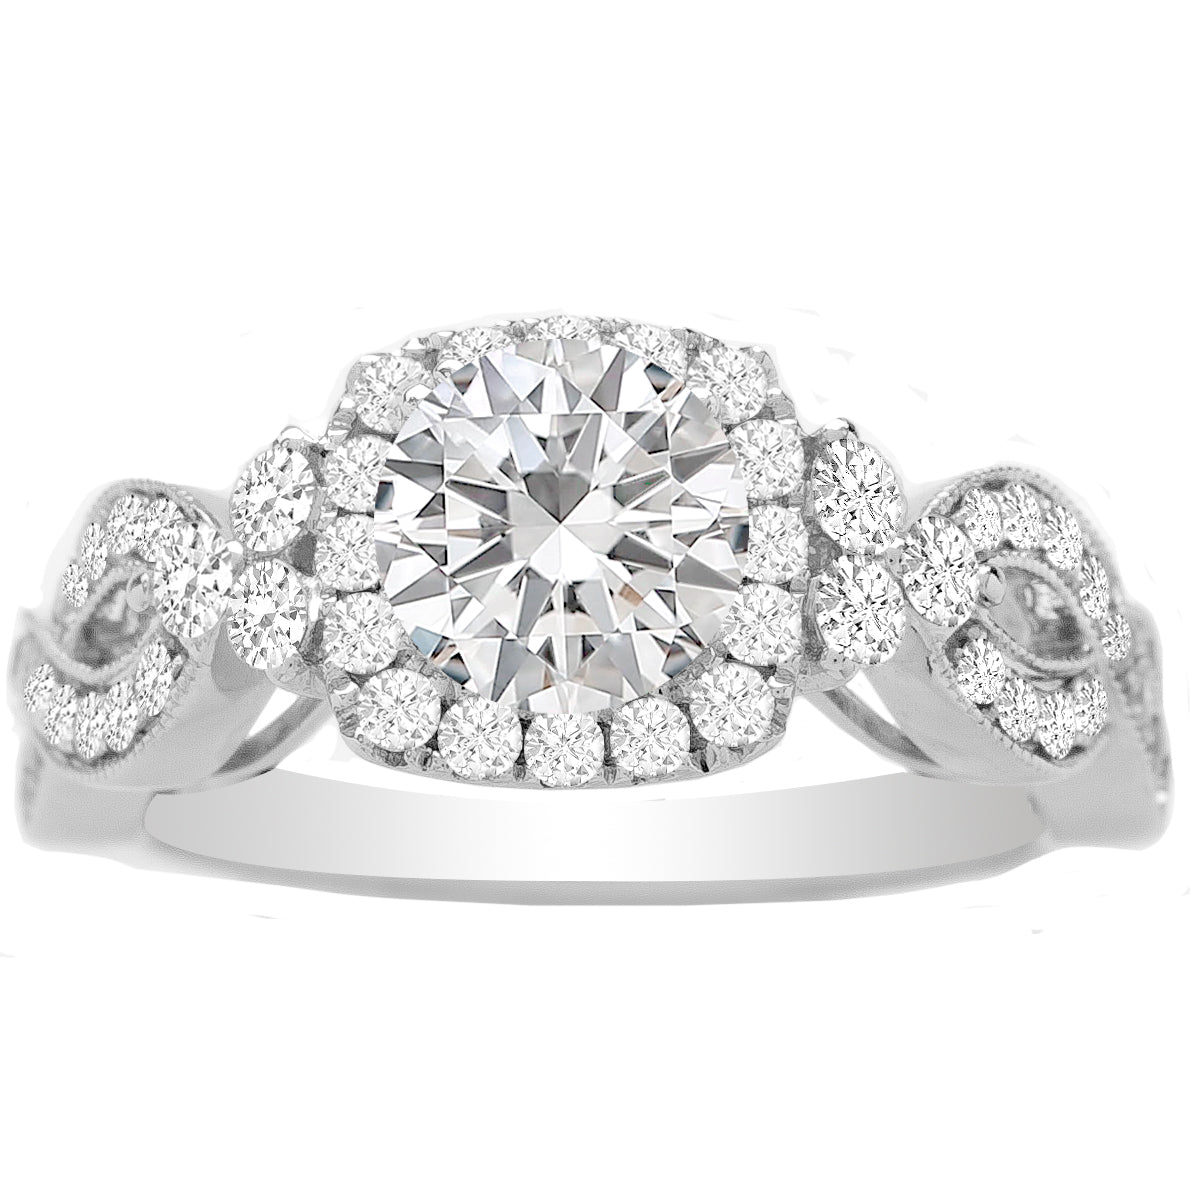 Jacinda Diamond Engagement Ring Setting in 14K White Gold; 0.63 ct